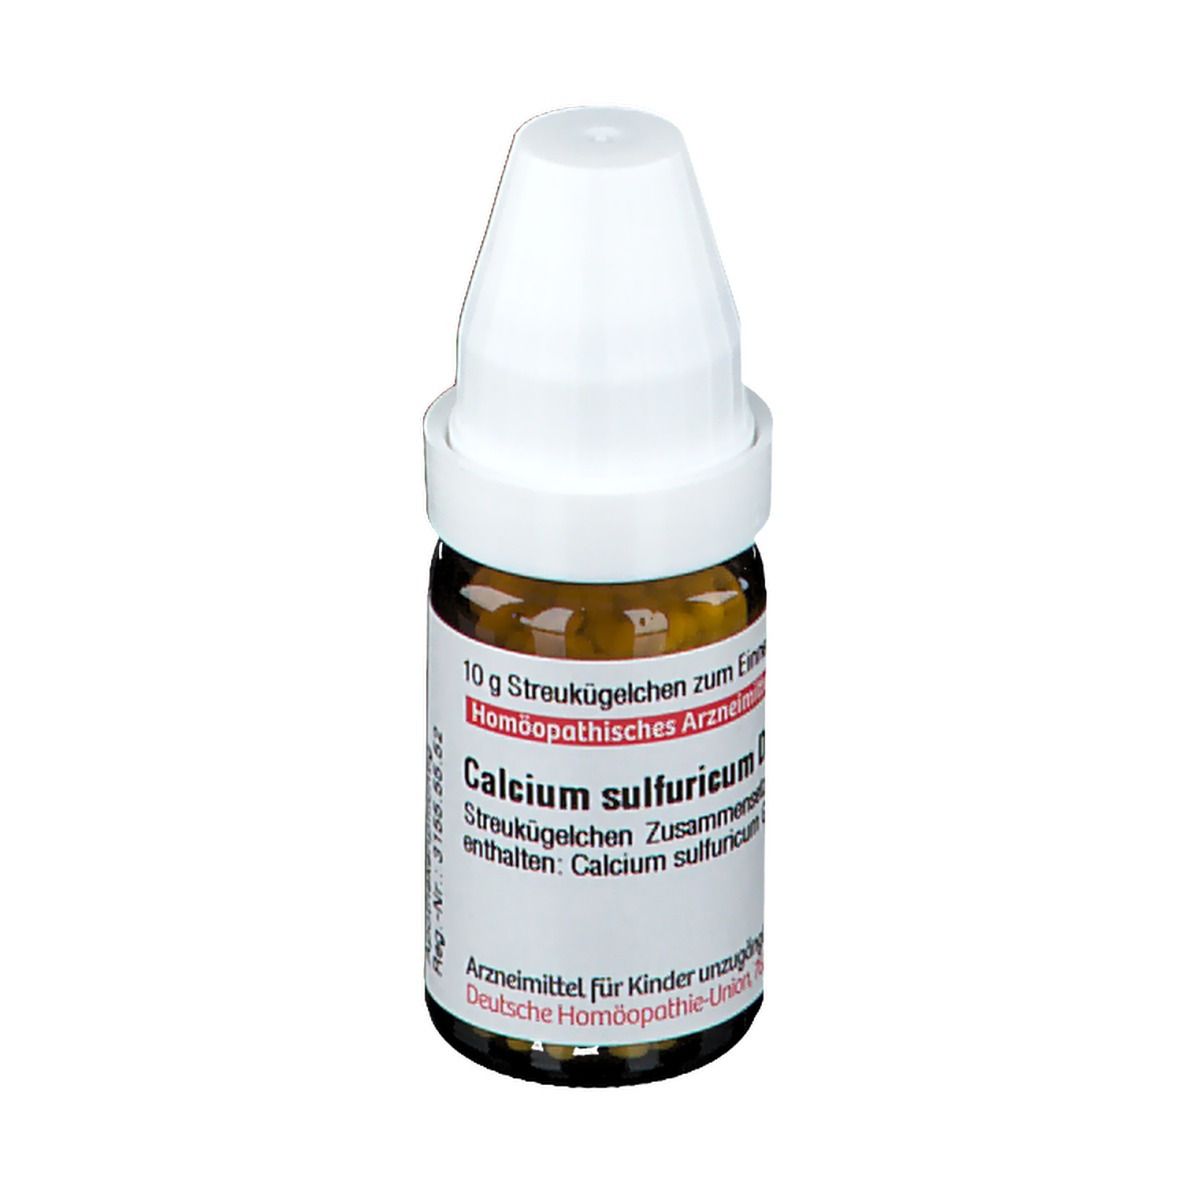 DHU Calcium Sulfuricum D200